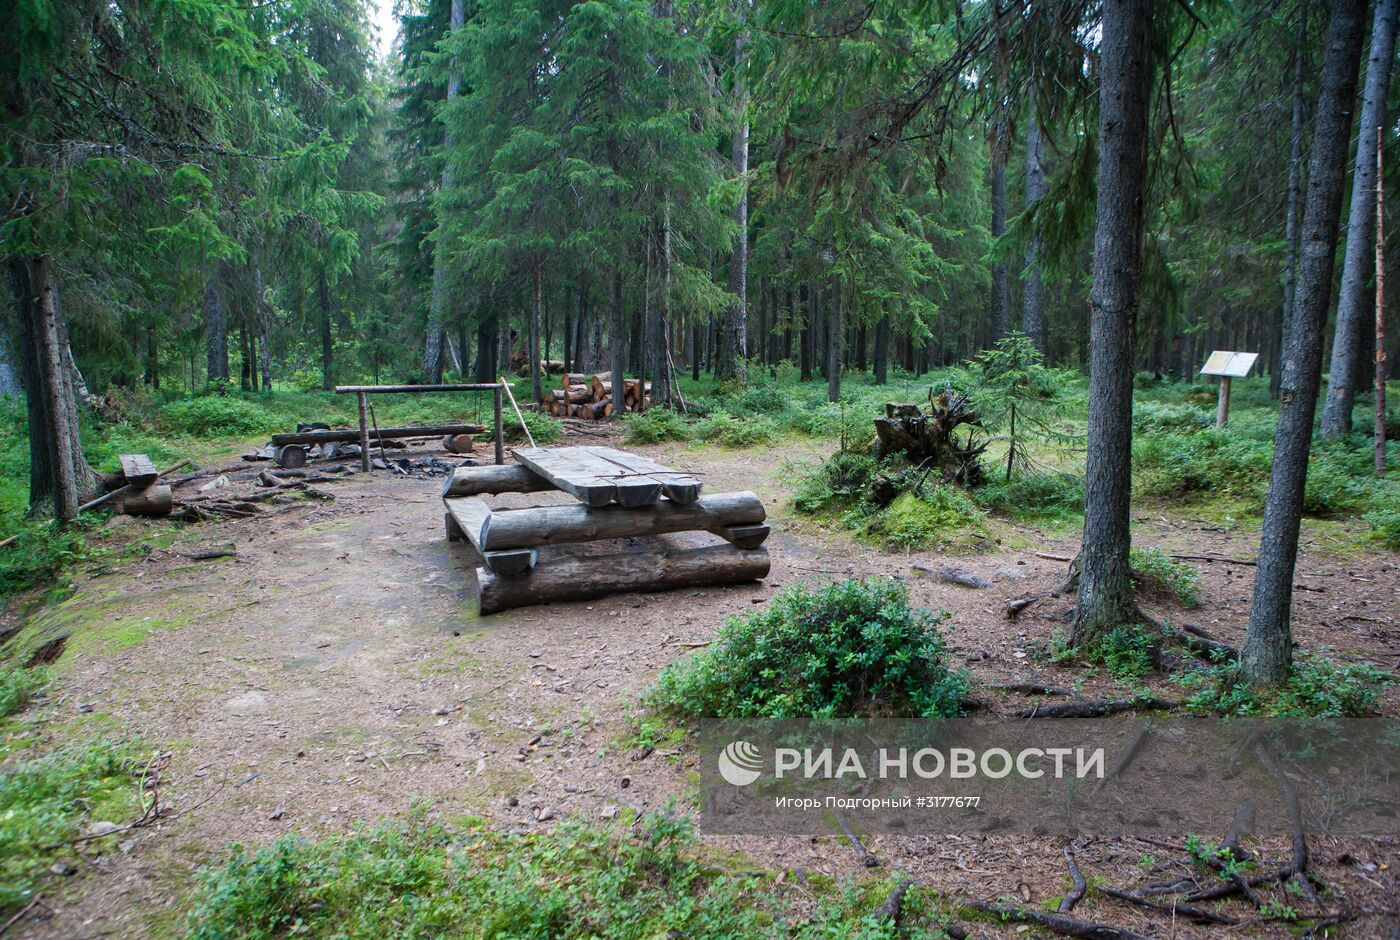 Водлозерский национальный парк в Архангельской области